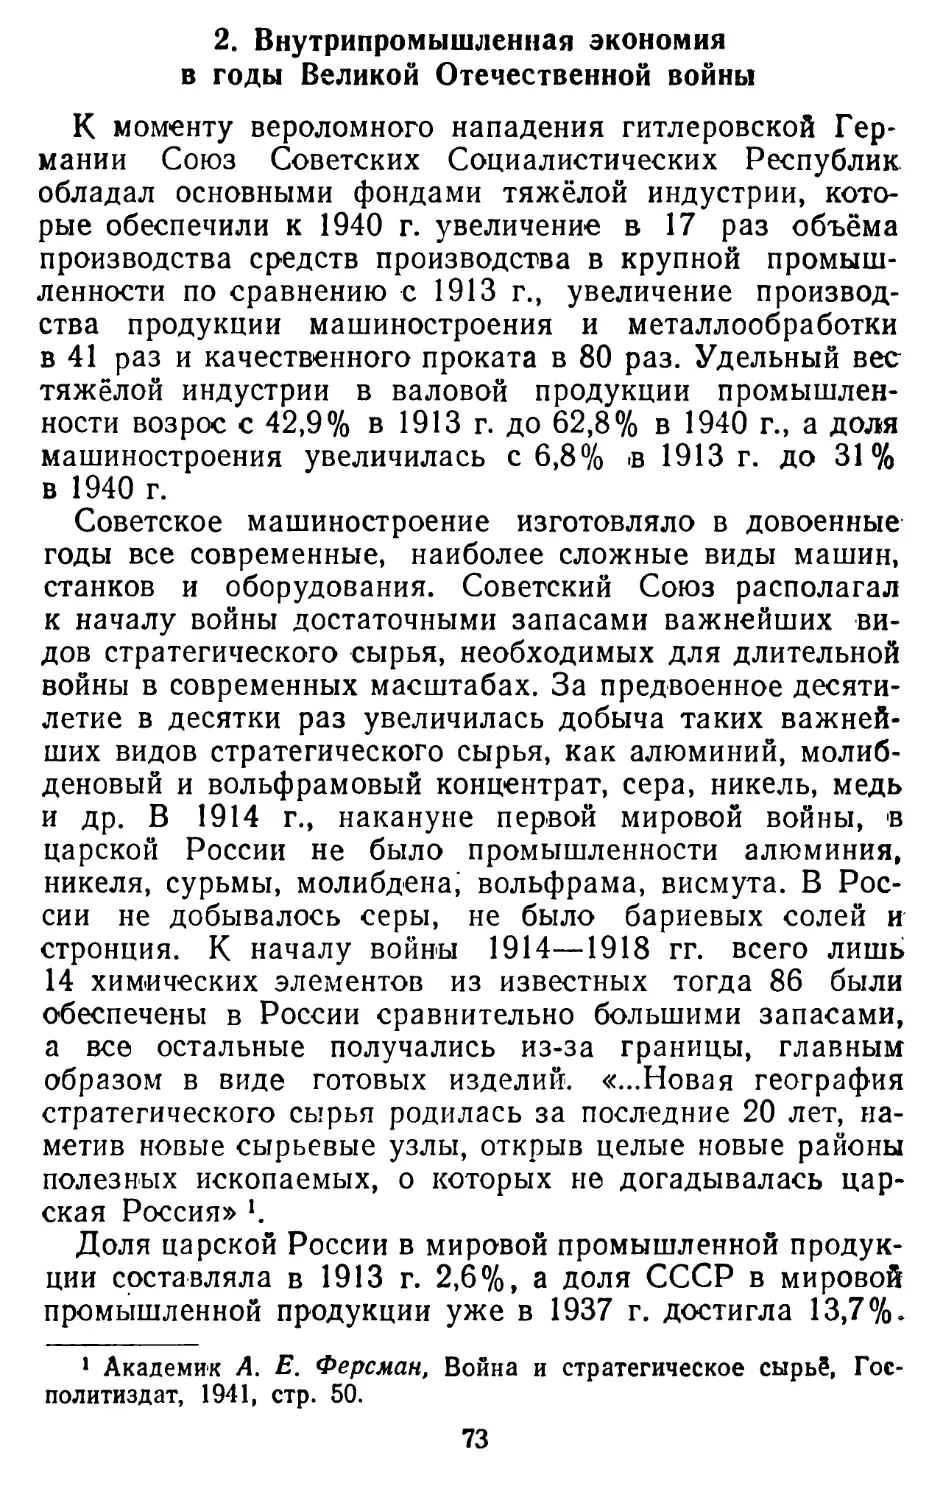 2. Внутрипромышленная экономия в годы Великой Отечественной войны